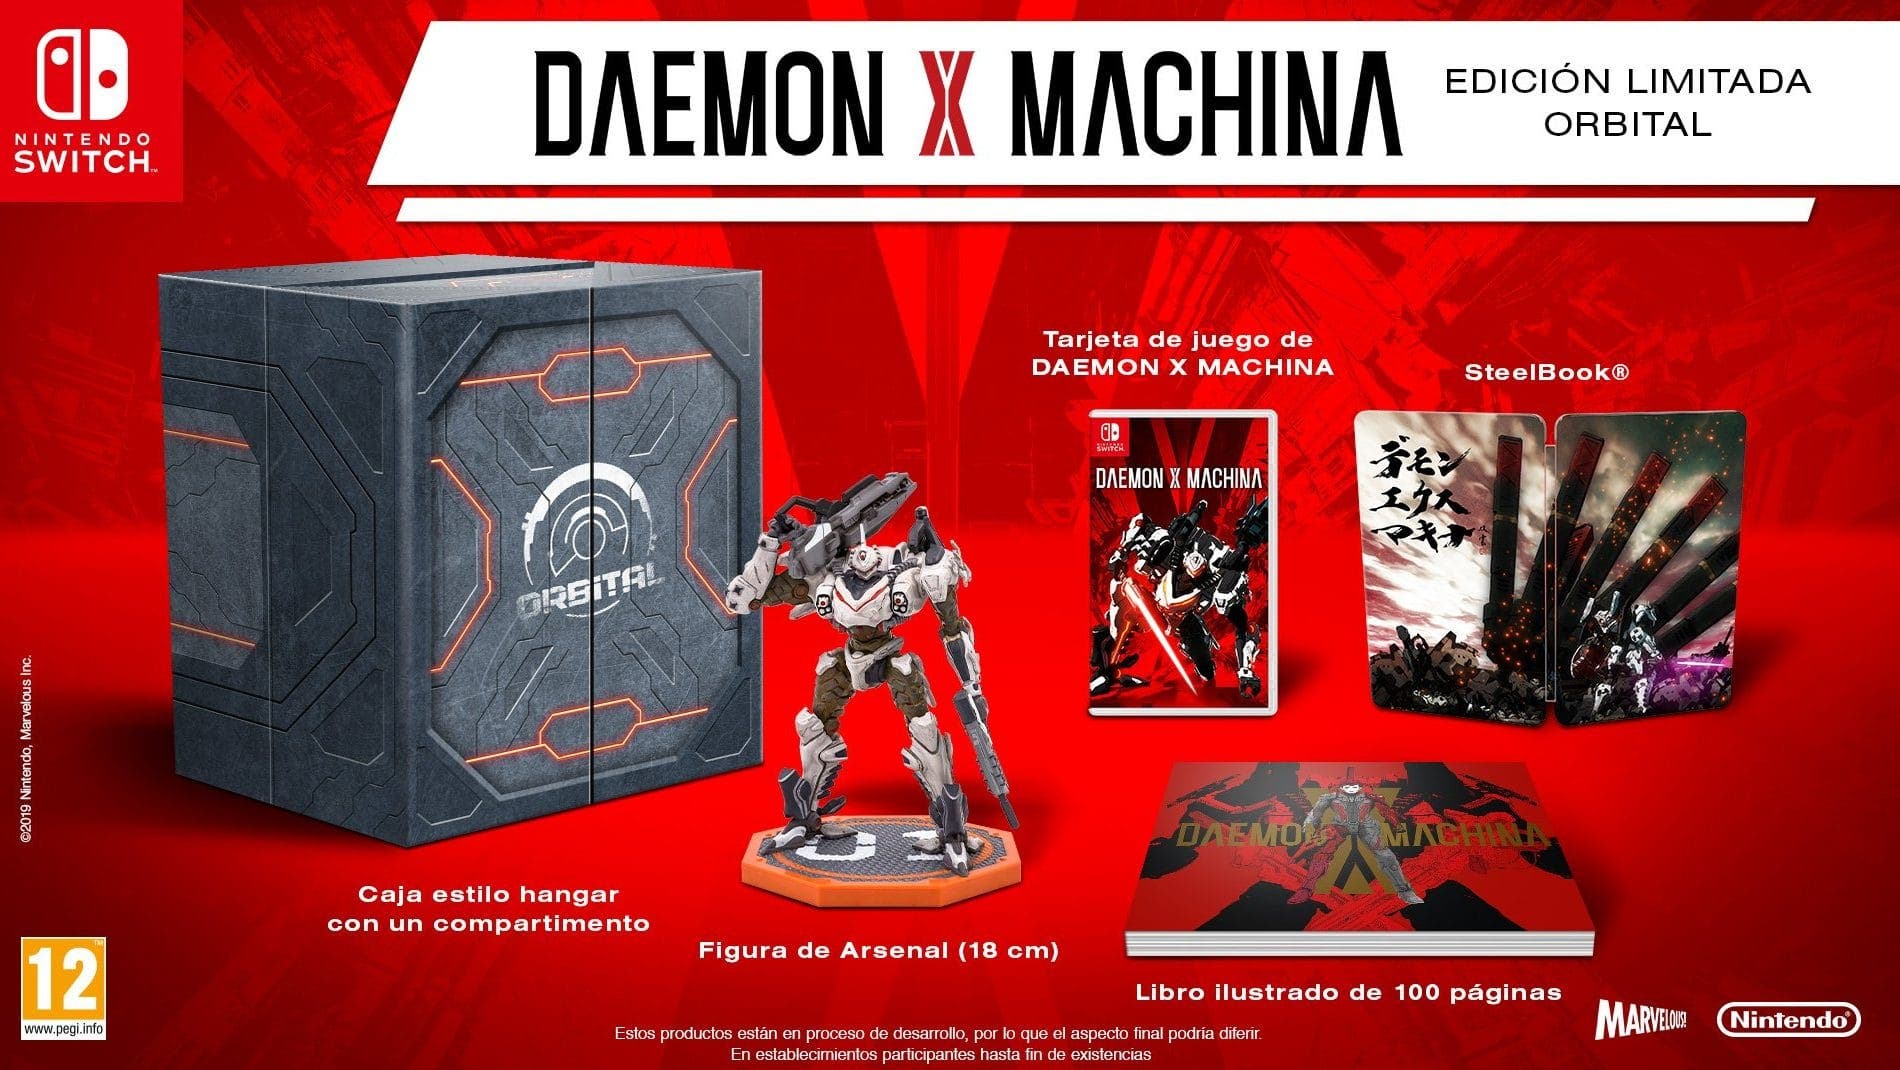 Anunciada la Edición Limitada Orbital para Daemon X Machina